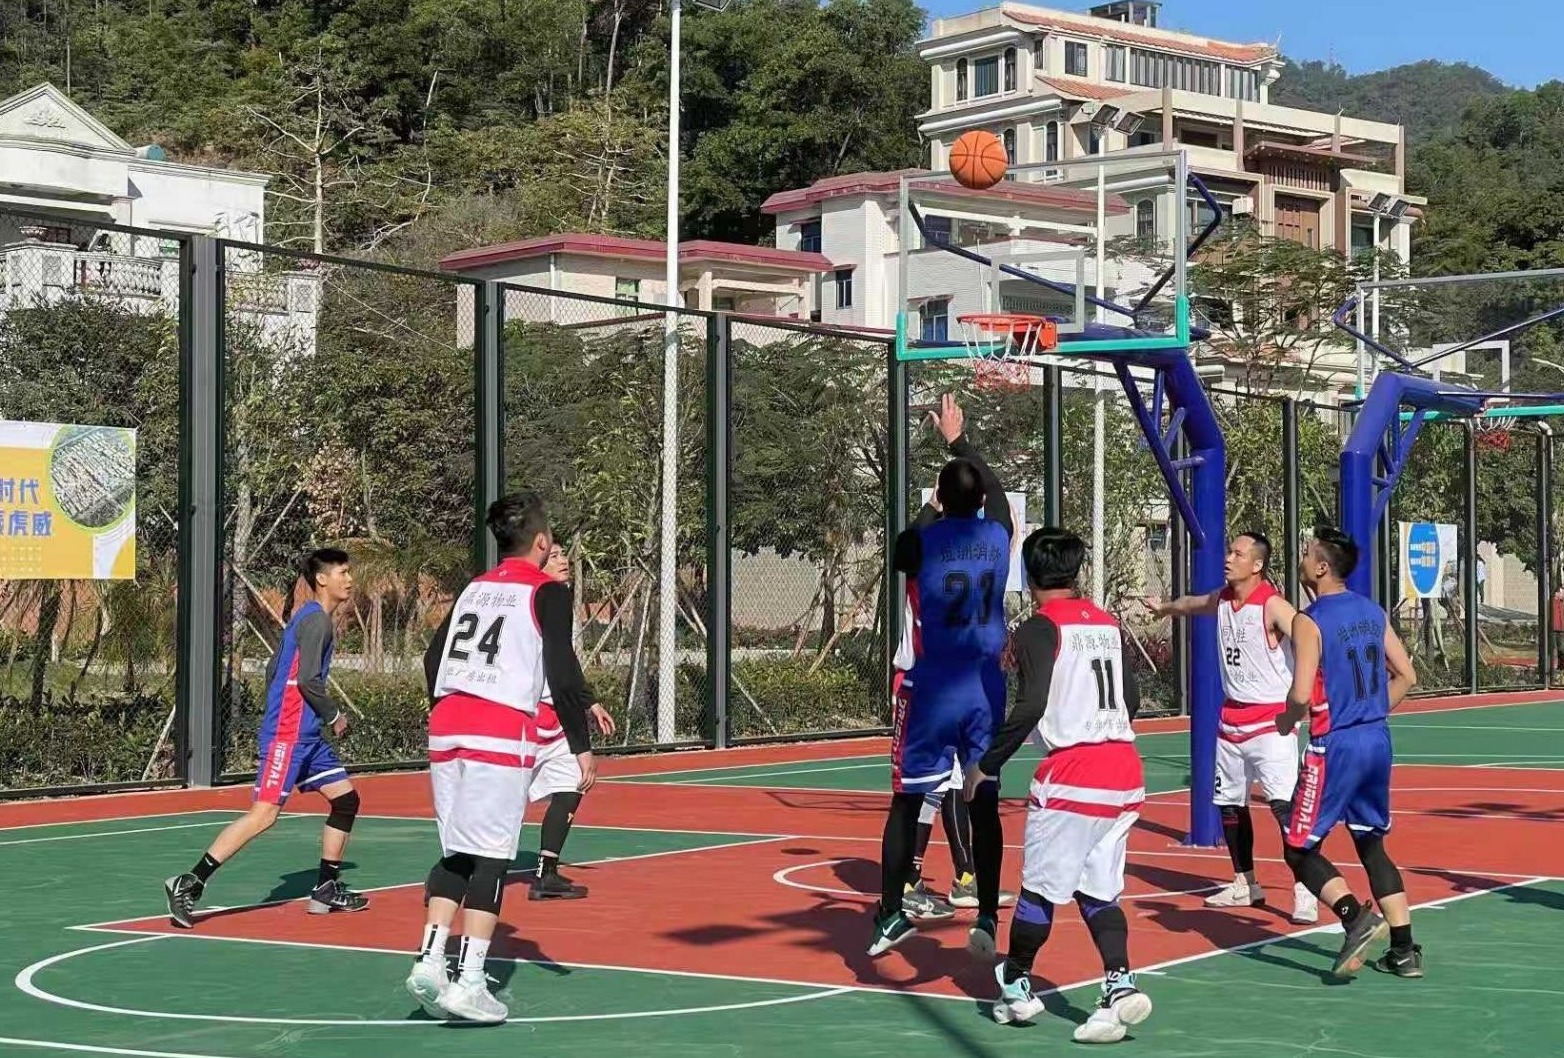 坦洲镇在铁炉山体育公园组织举办了足球、篮球、网球等体育联谊赛。